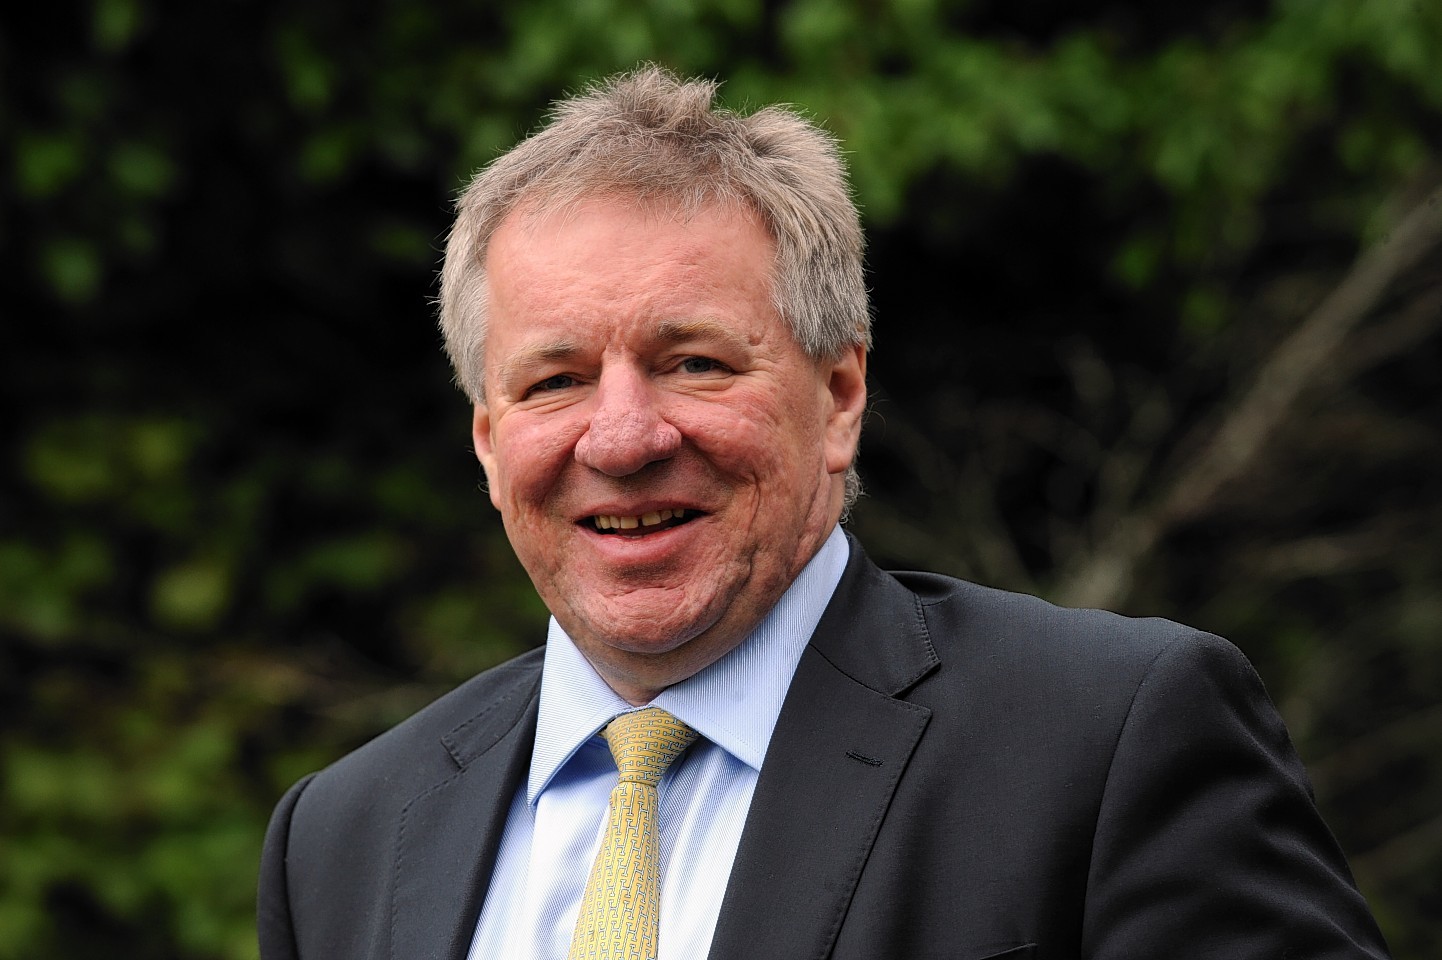 Aberdeen Asset Management chief executive Martin Gilbert